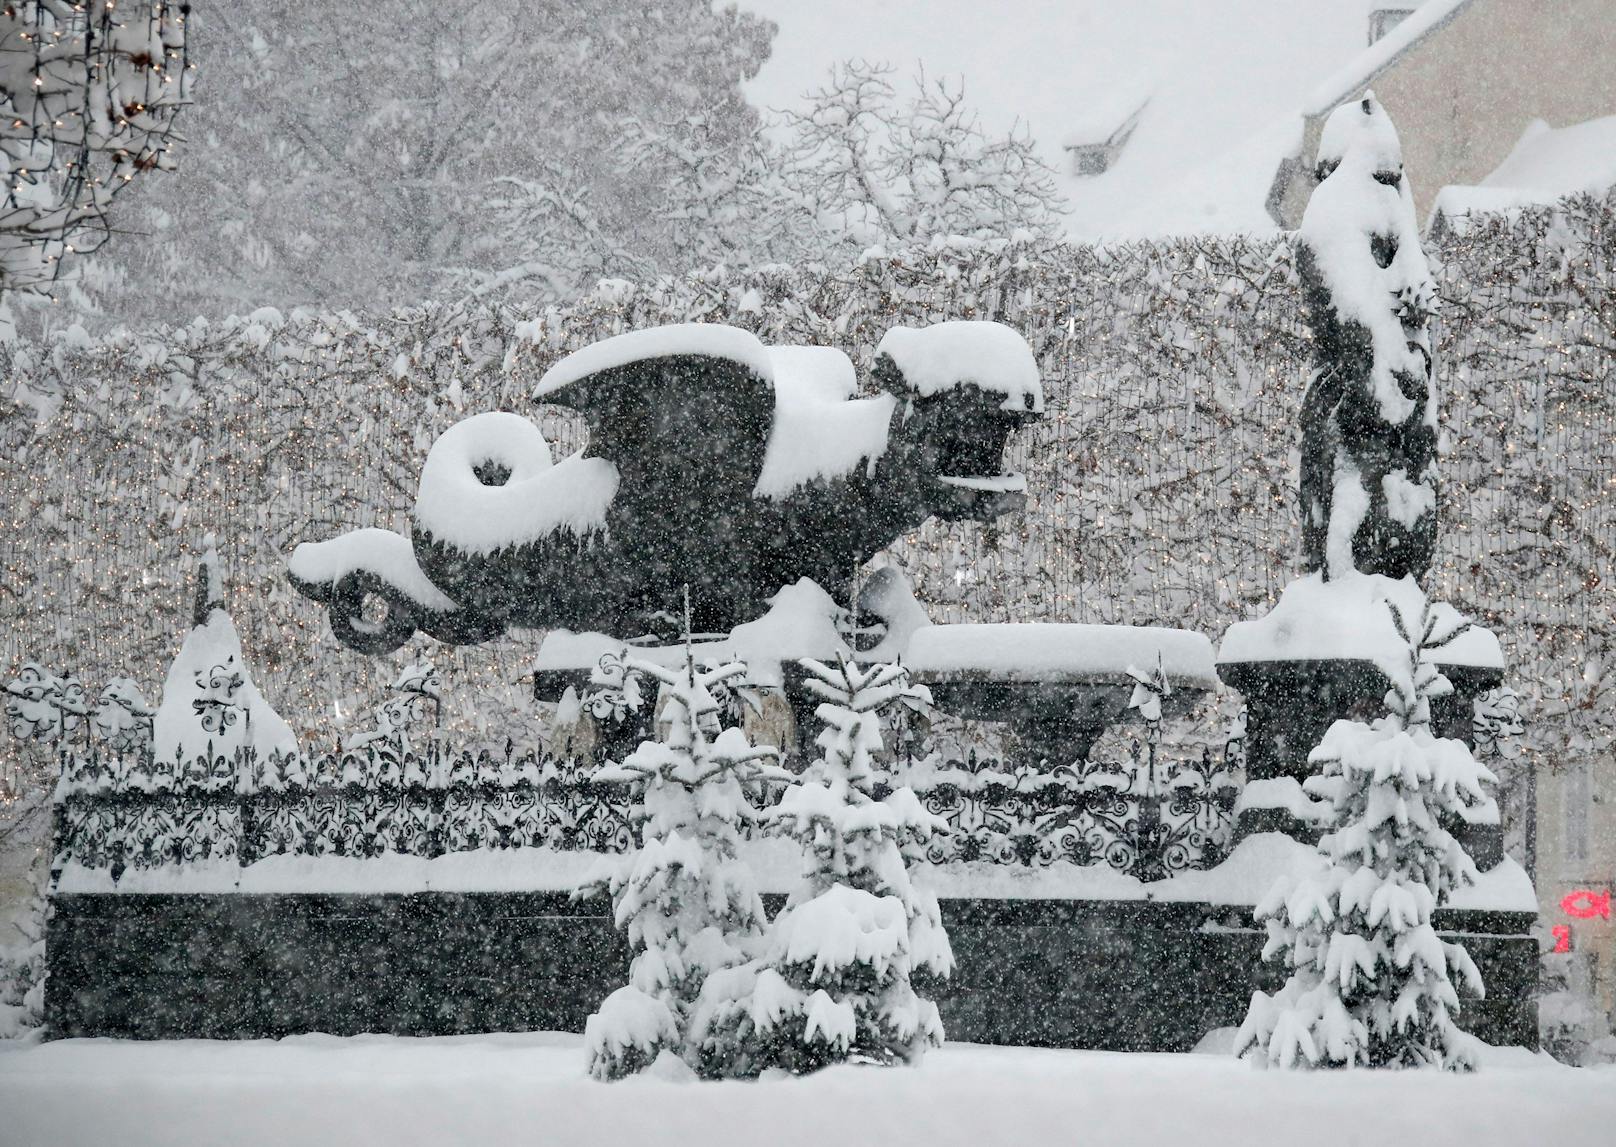 Besonders Kärnten steht im Fokus des Schneefalls, Klagenfurt wird weiß.